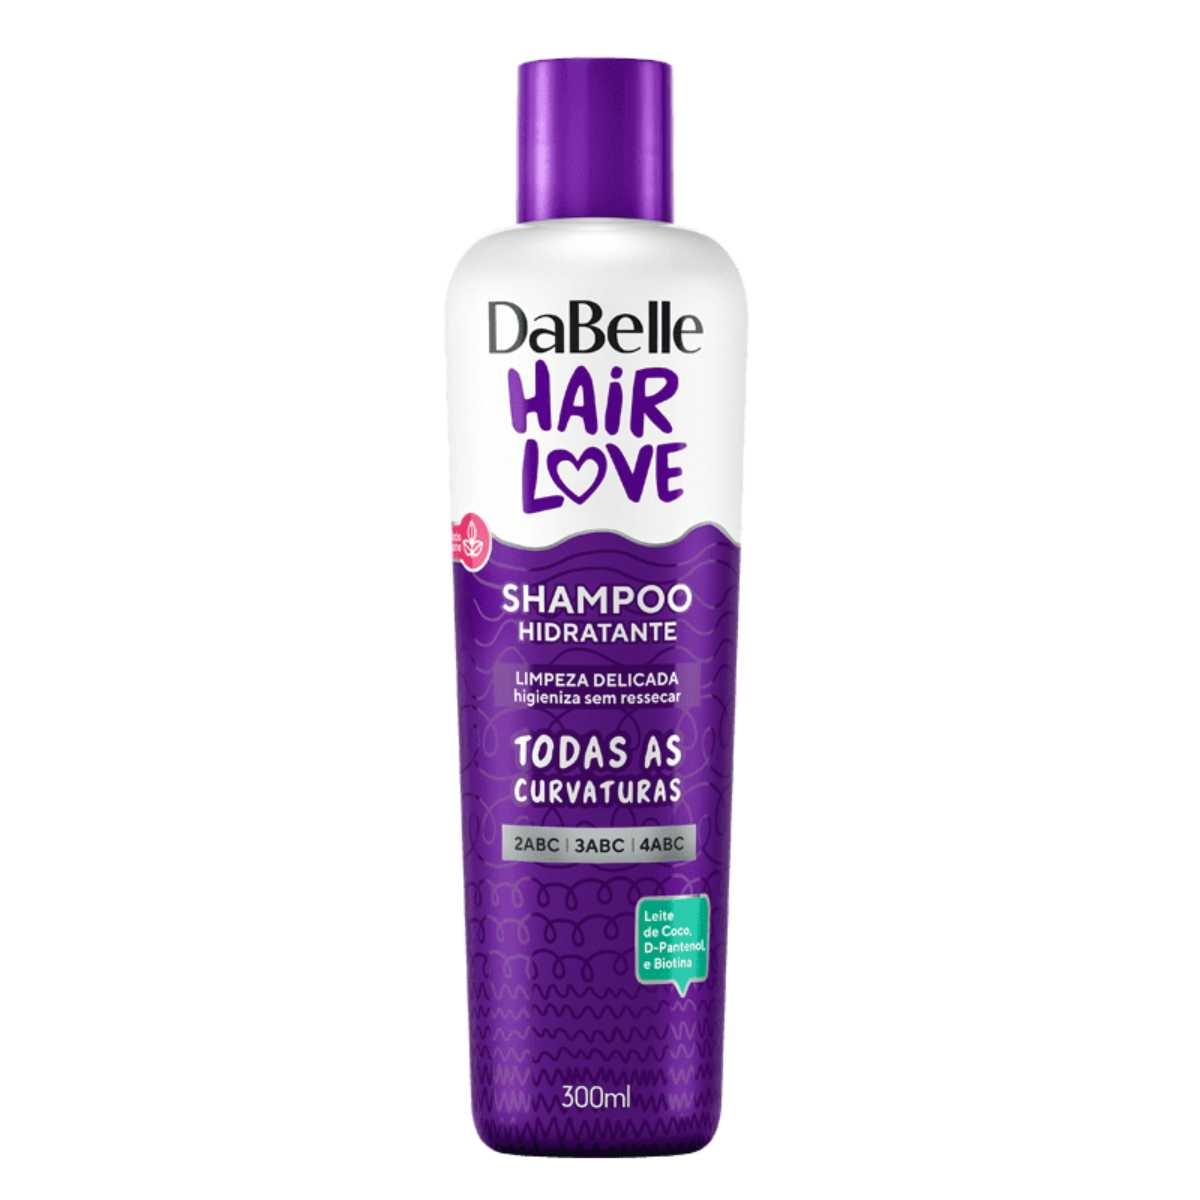 Shampoo Hidratante DaBelle Hair Love com 300ml 300ml